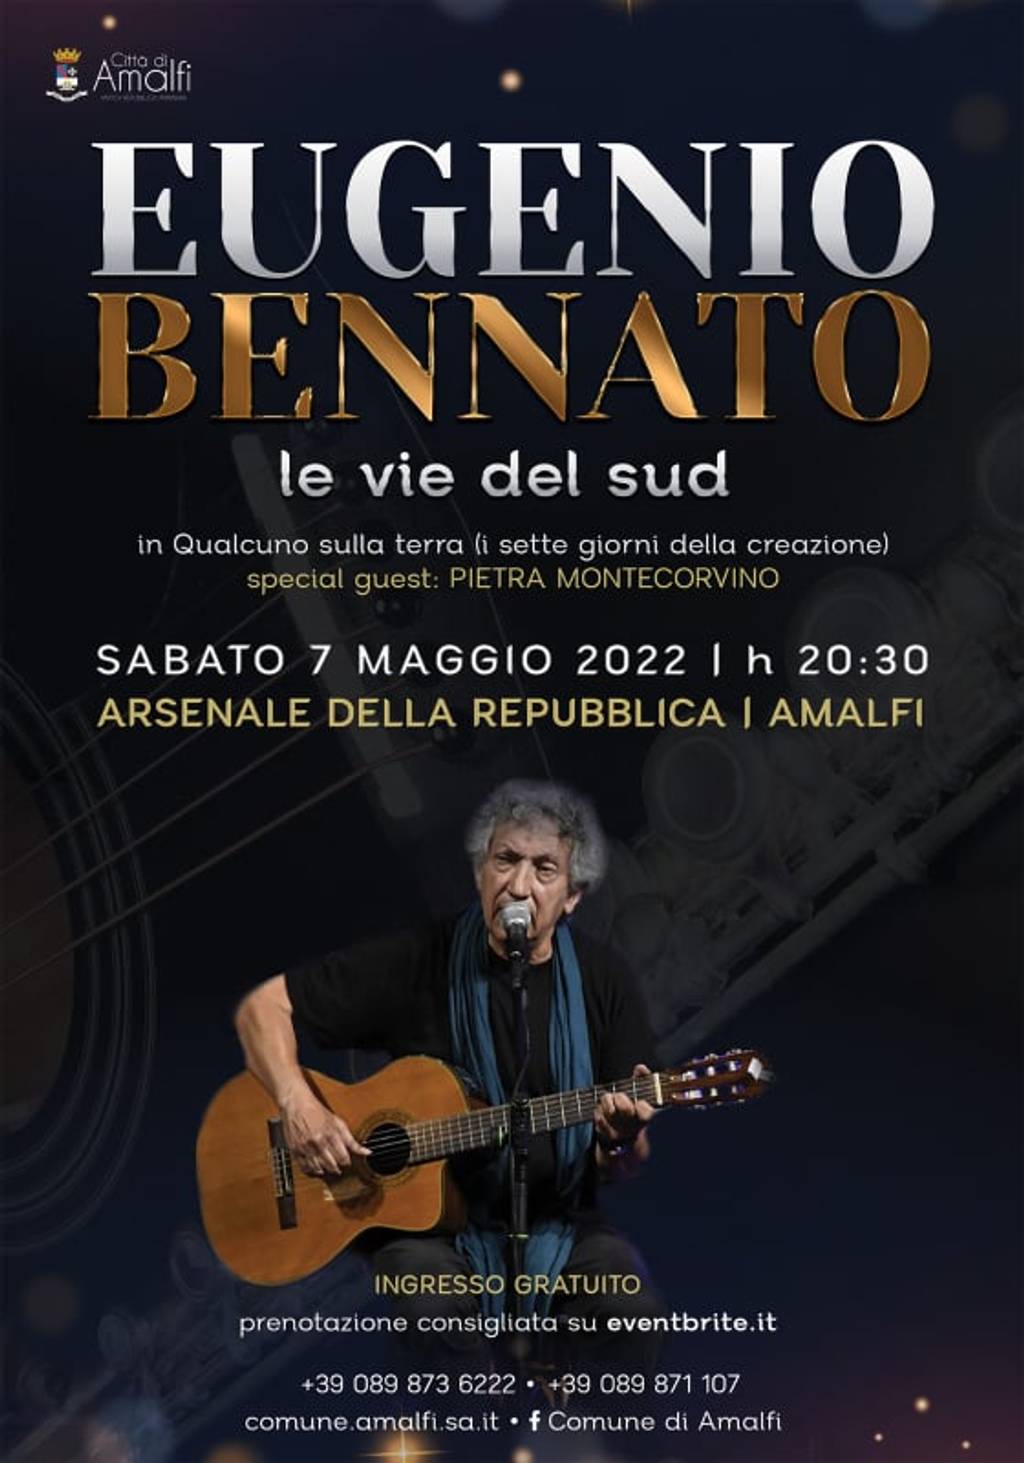 Eugenio Bennato in concert in Amalfi